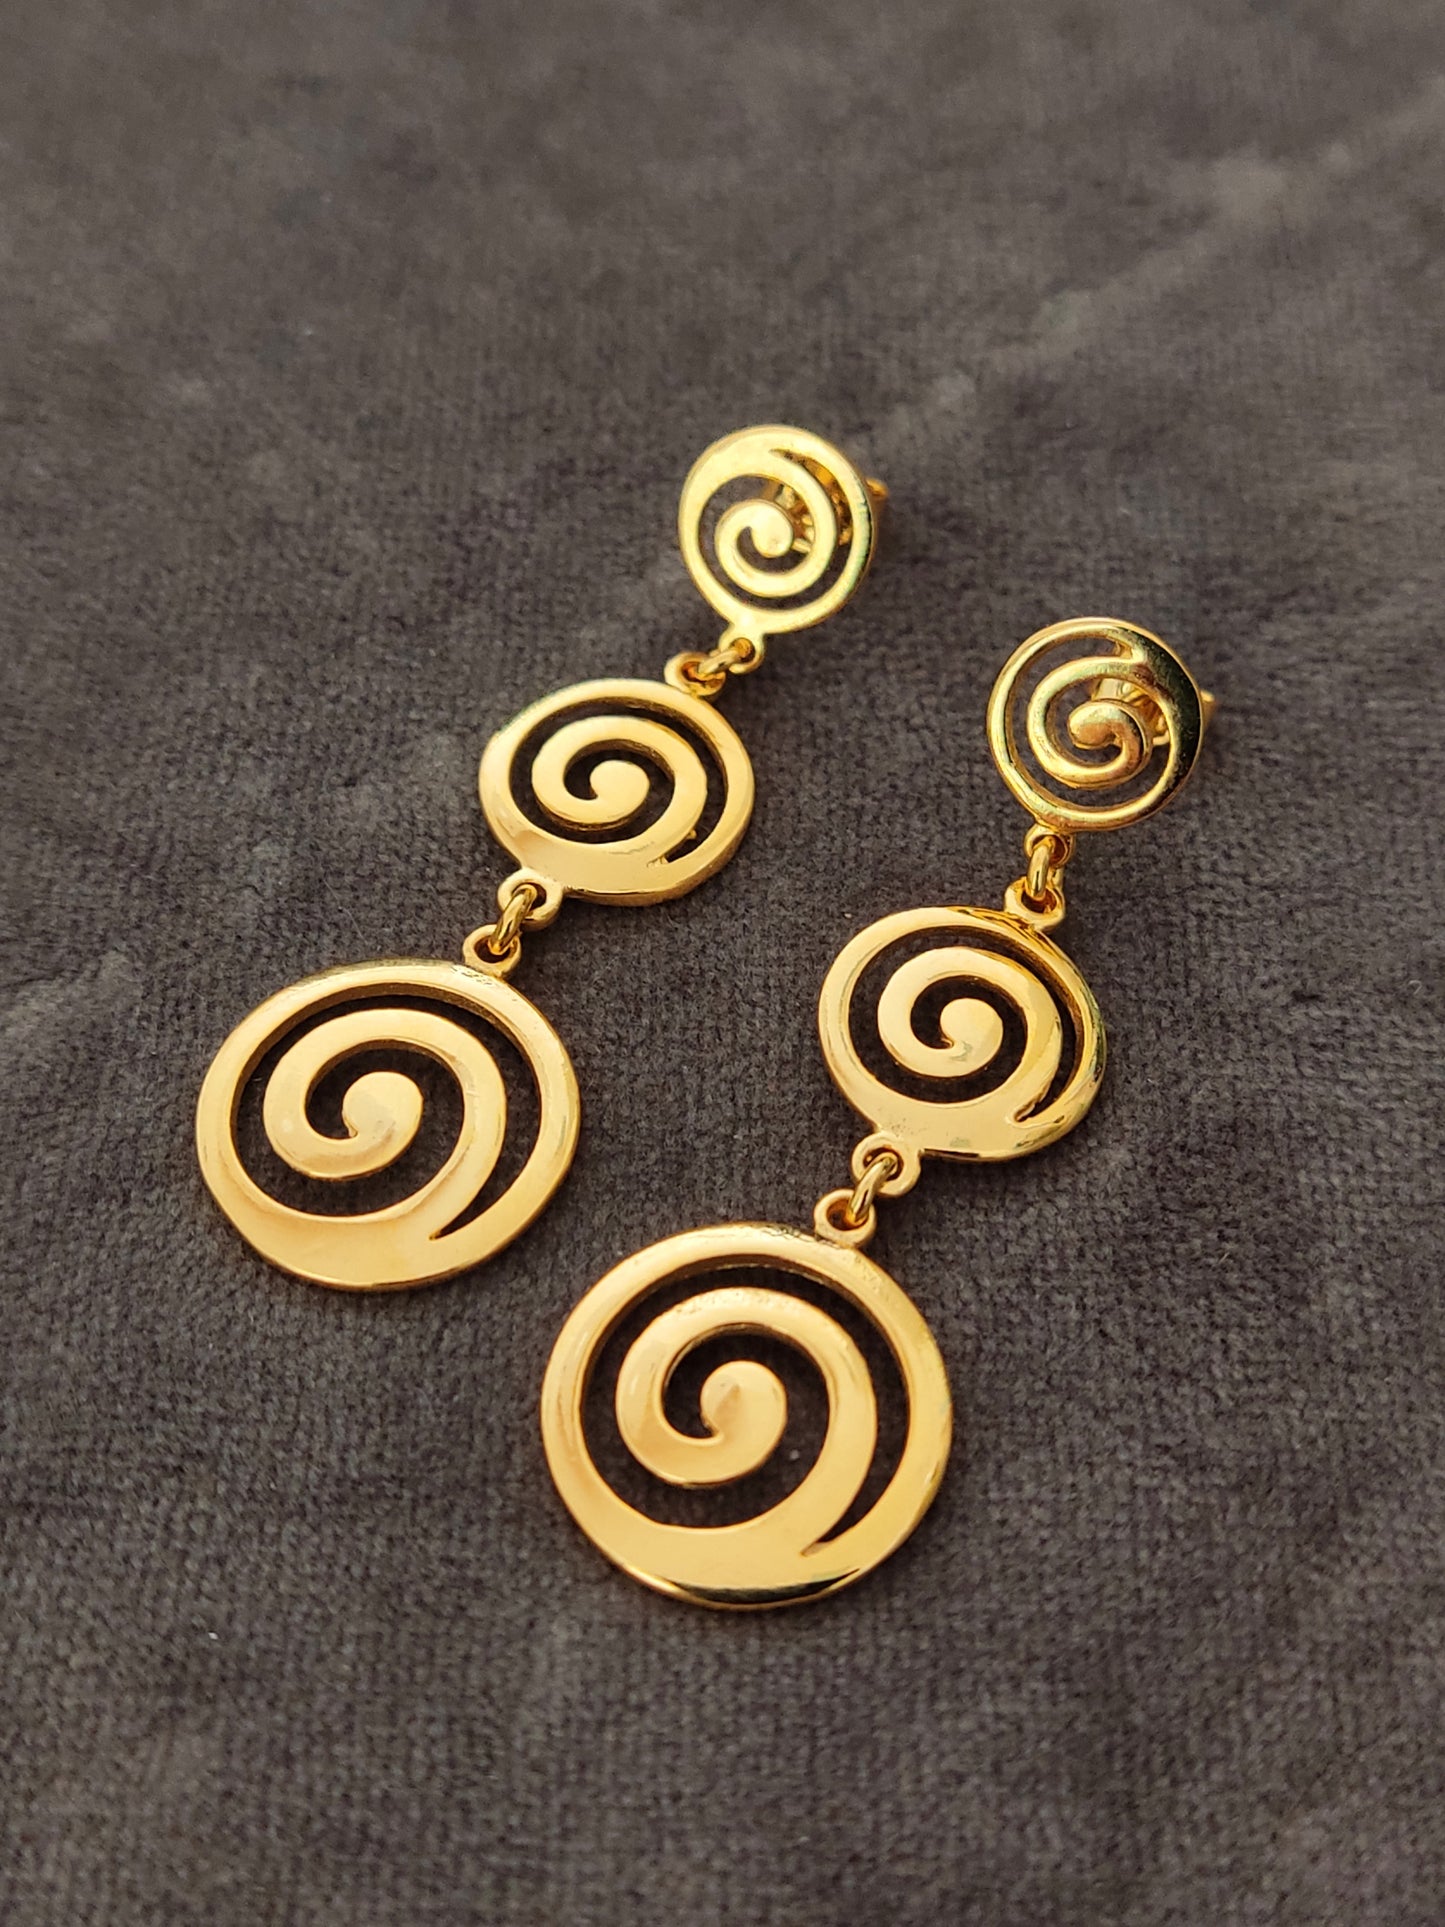 Griechische Ohrringe aus dreifach spiralförmigem, vergoldetem Silber